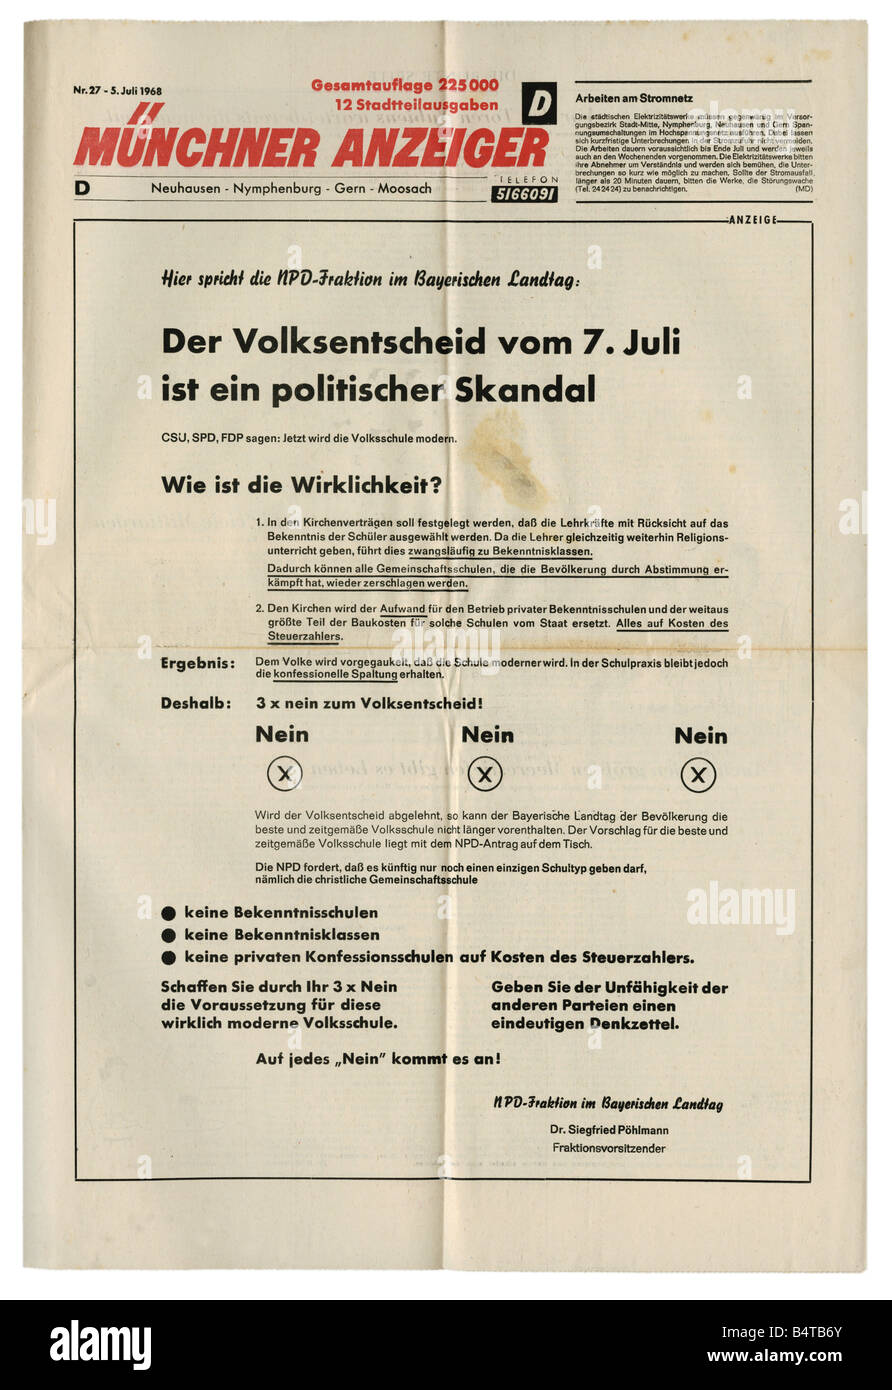 Geografia / viaggio, Germania, politica, stampa/media, 'ünchner Anzeiger', Monaco di Baviera, numero 27, 5.7.1968, , Foto Stock